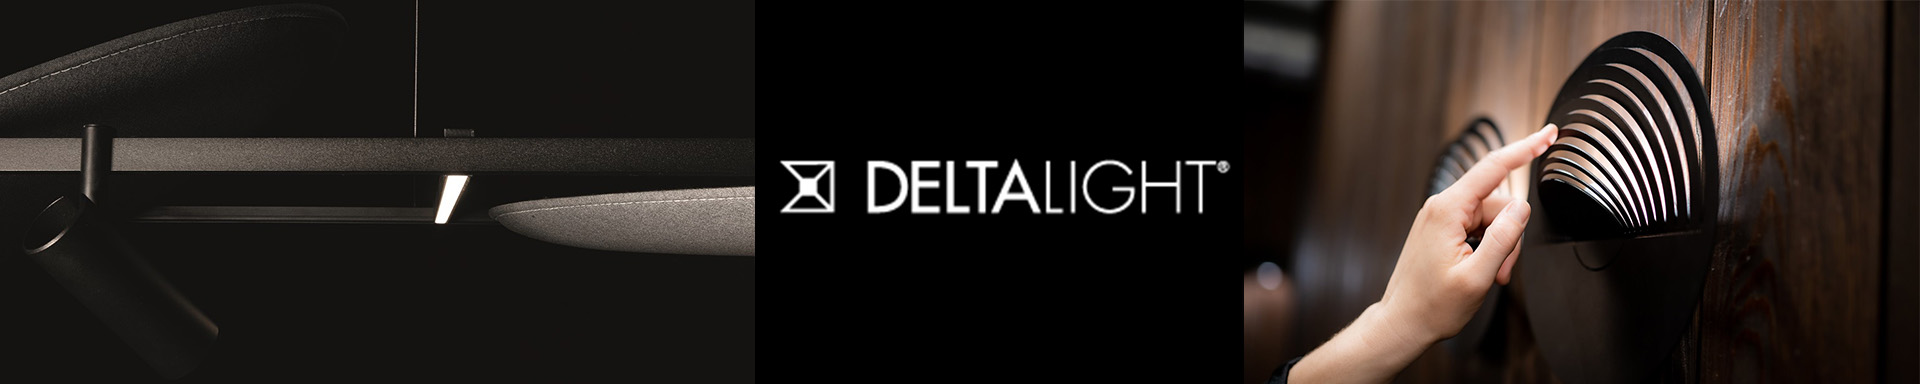 Delta Light 